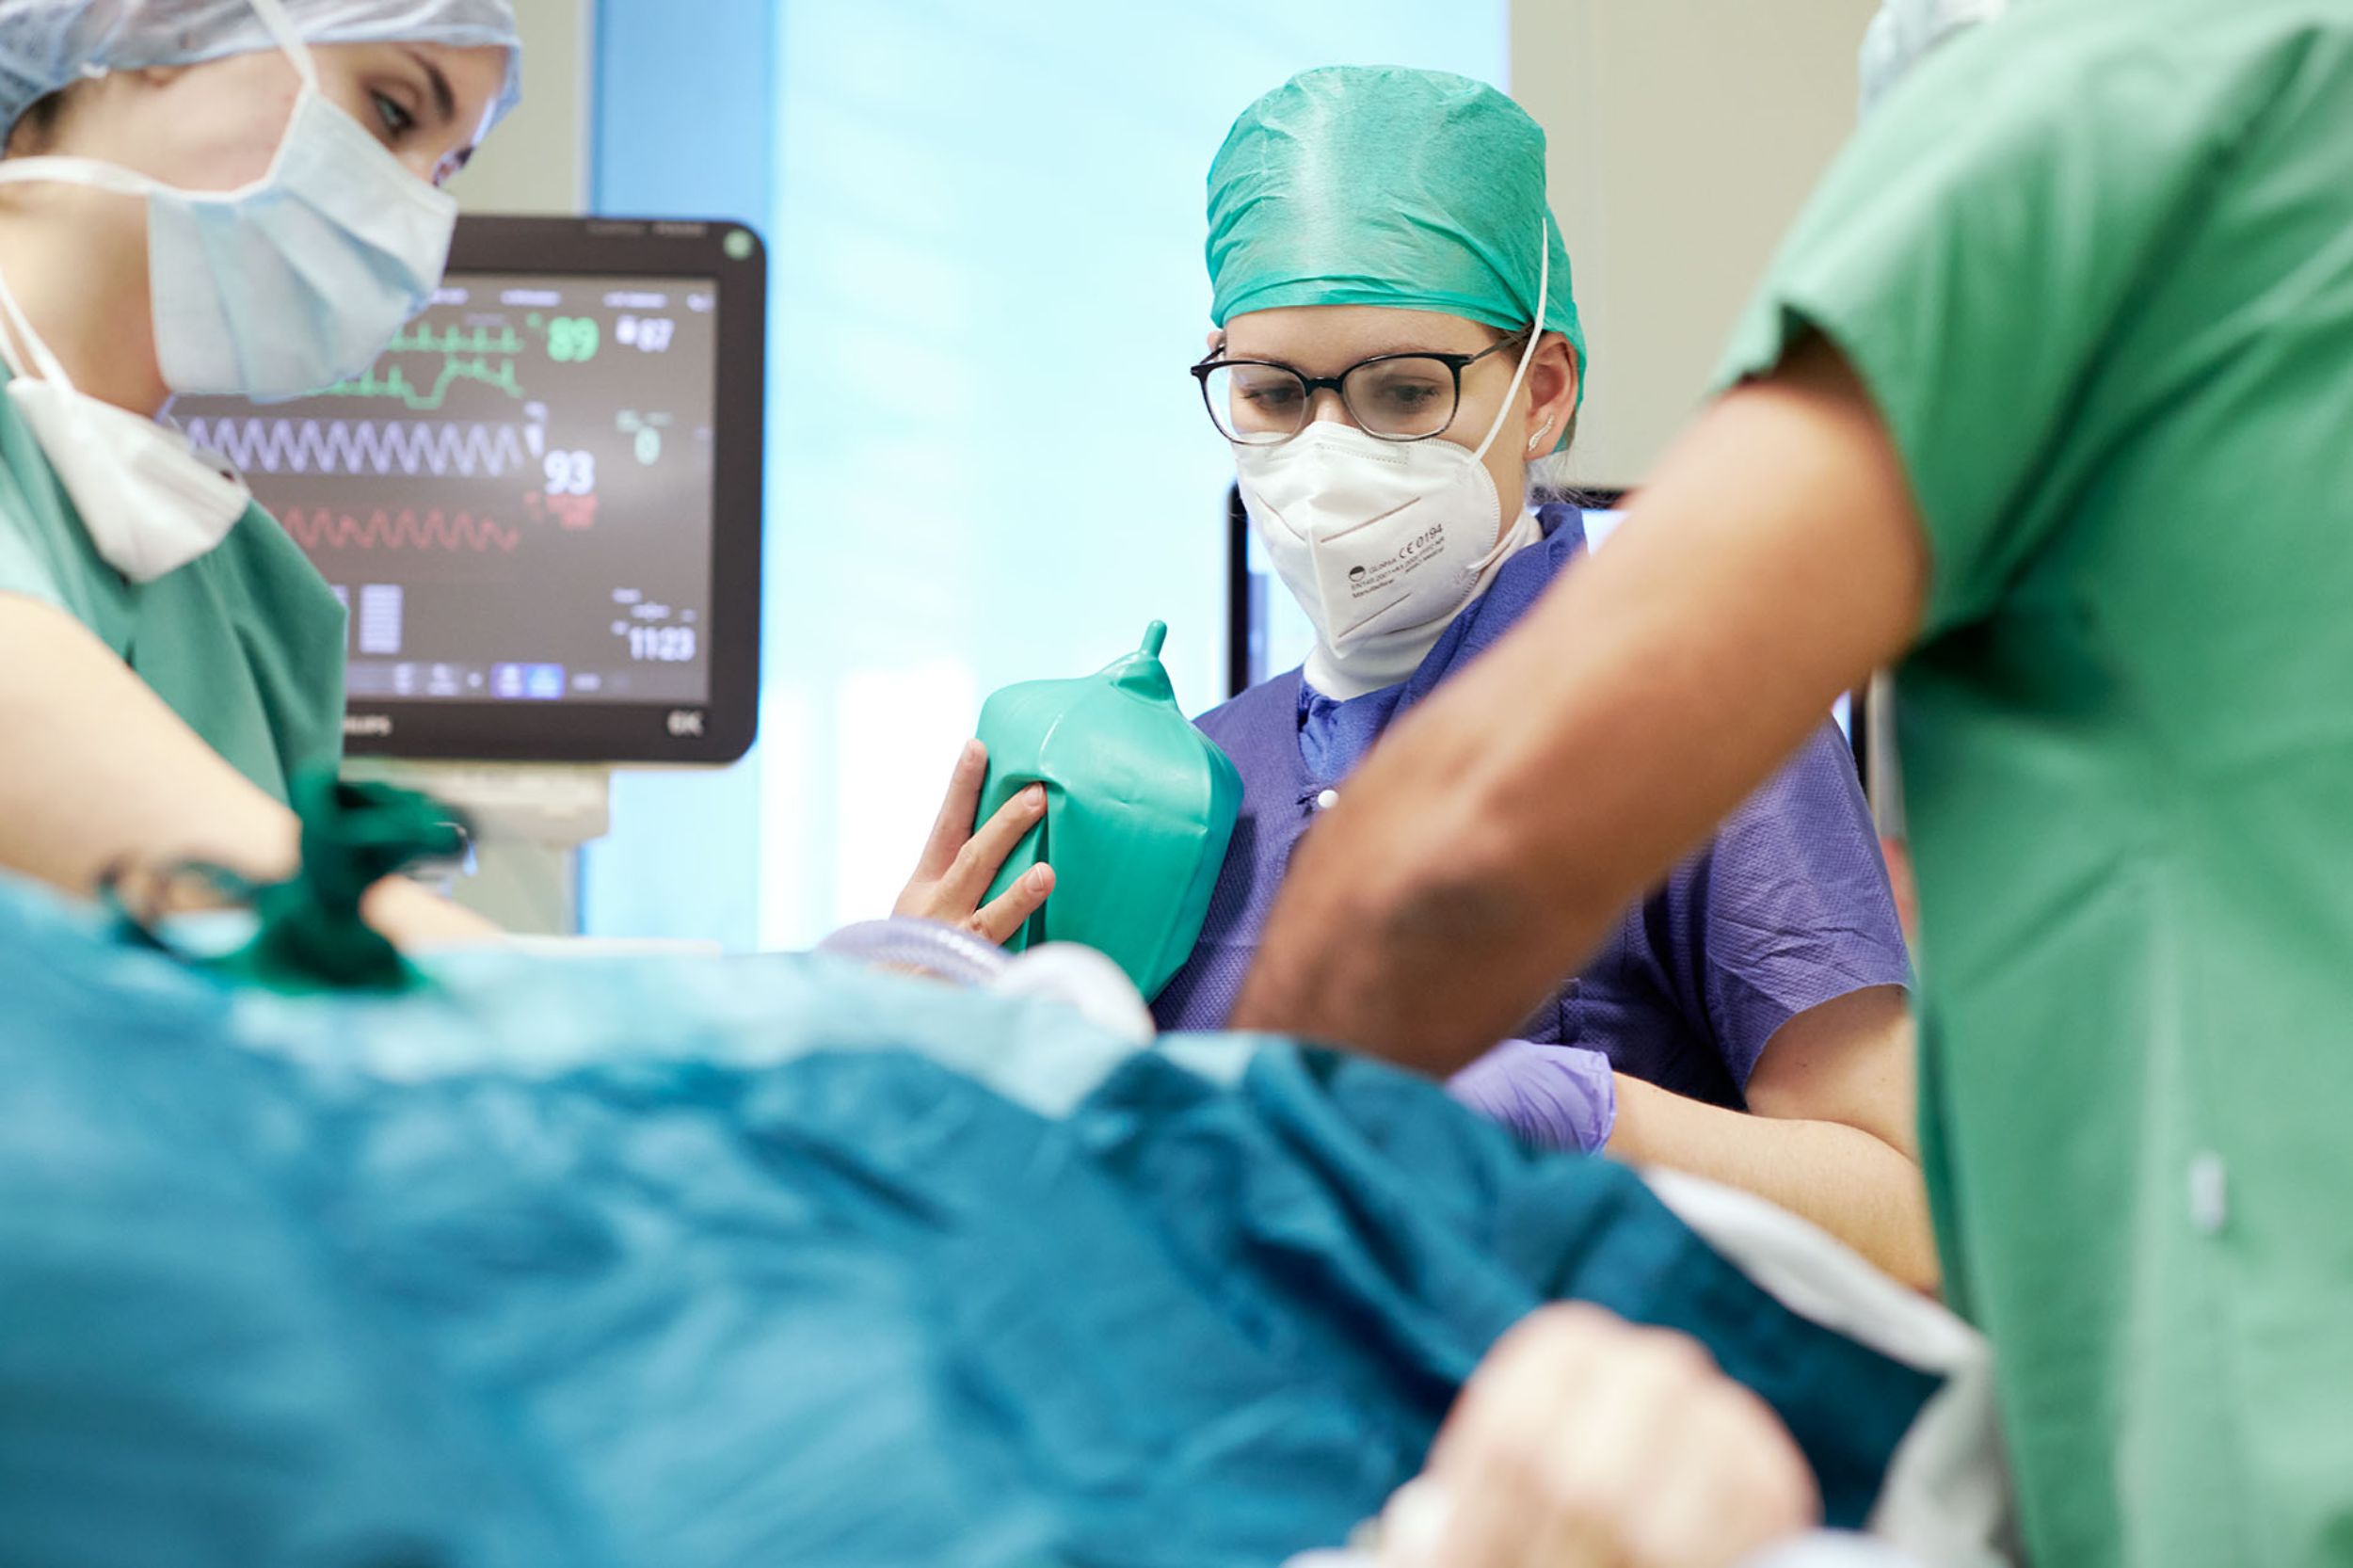 Anesthésiste et équipe chirurgicale préparant la patiente pour l'opération